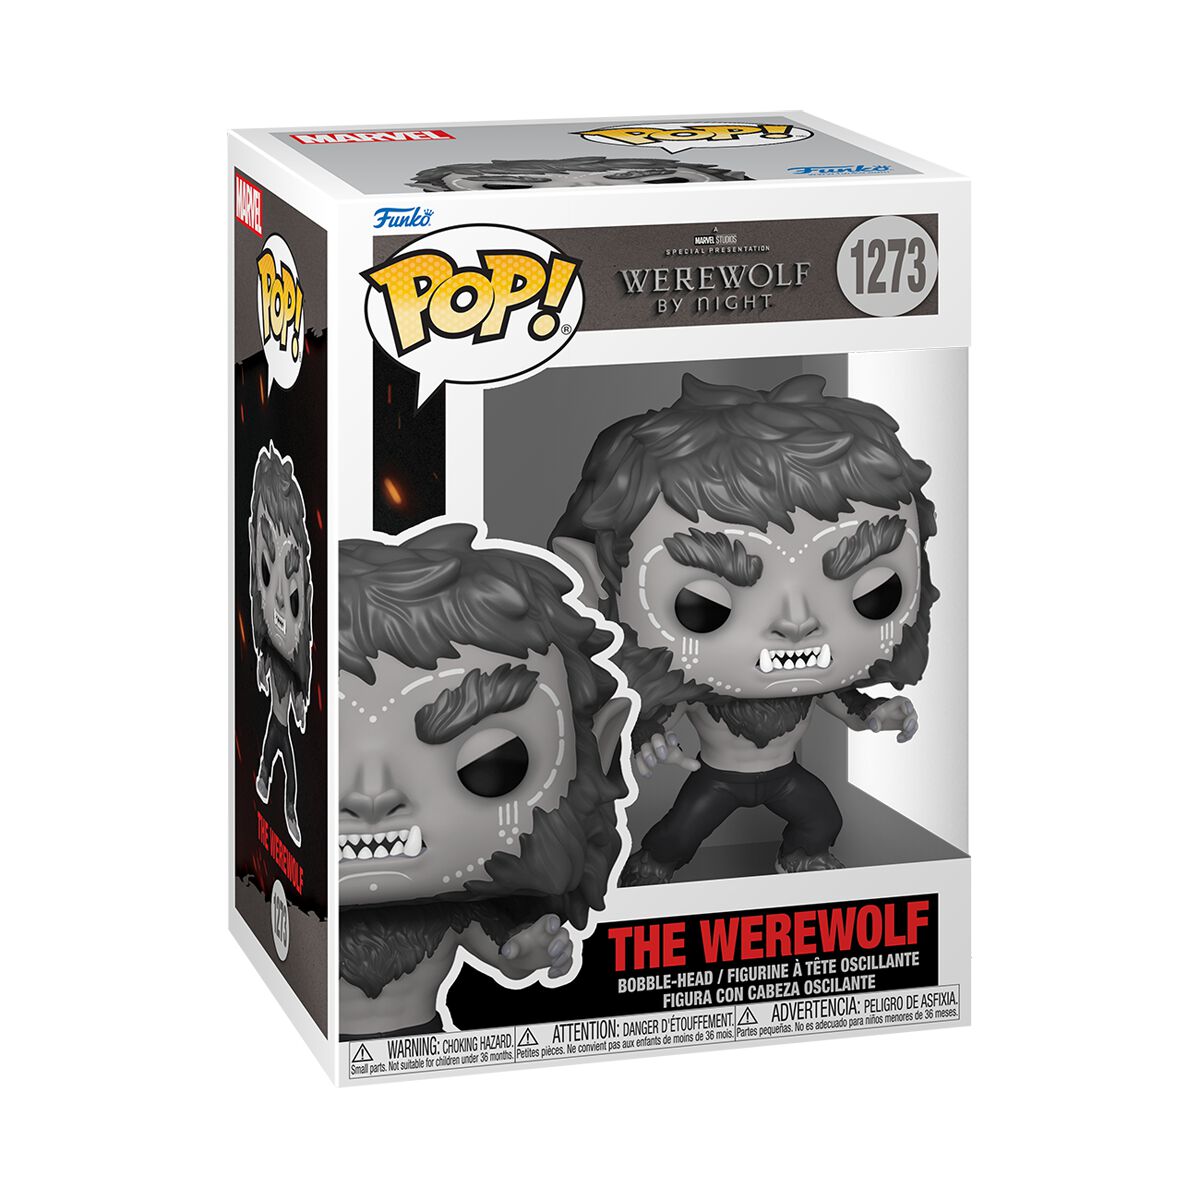 Image of Werewolf by night - The Werewolf vinyl figurine no. 1273 - Funko Pop! - Funko Shop Europe